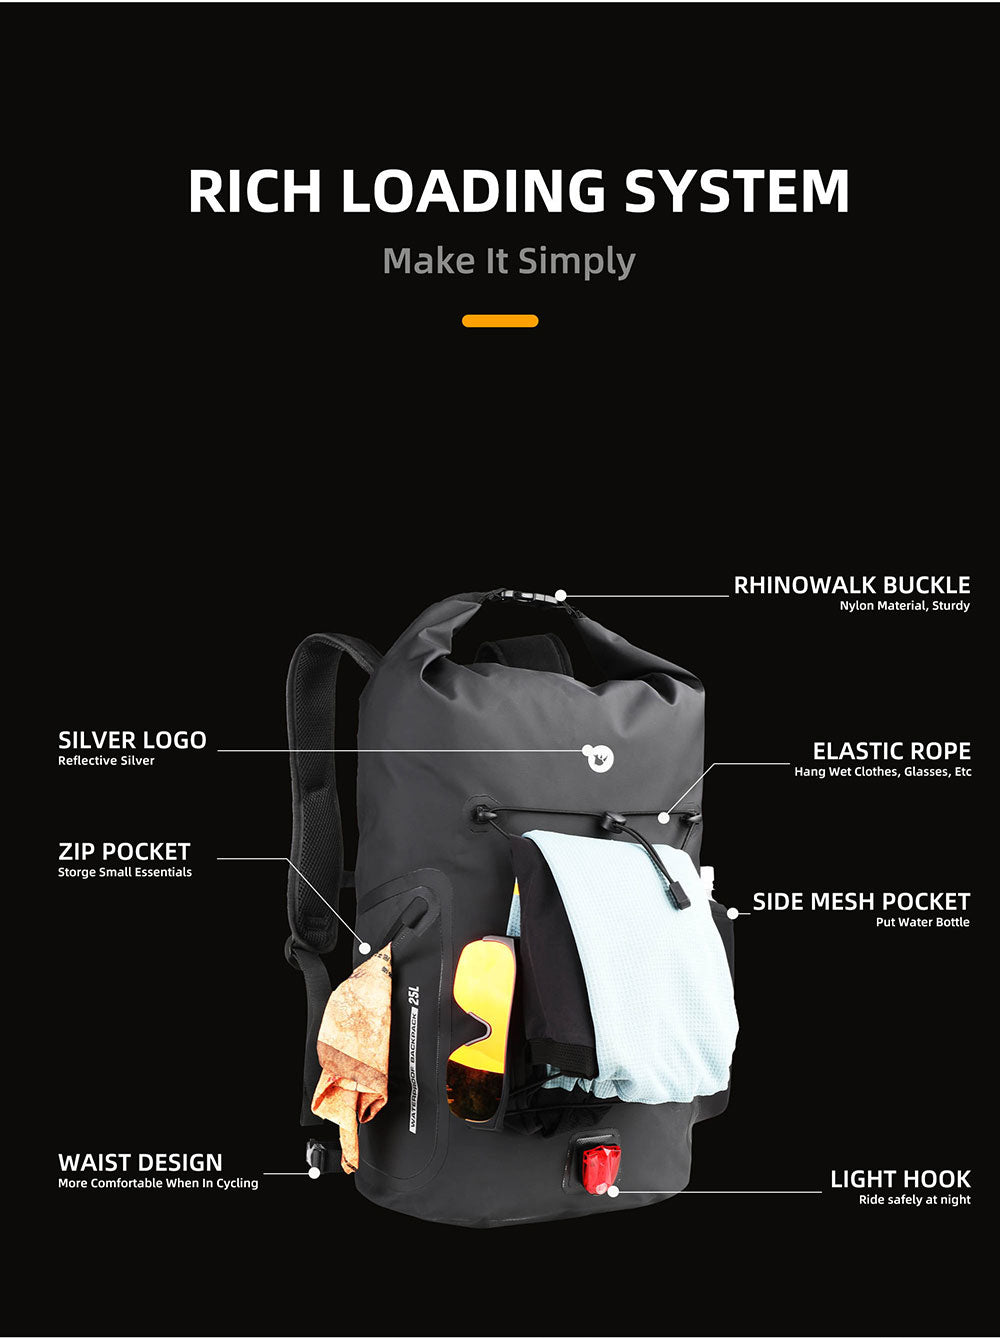 Dry Backpack 25L, Waterproof Bags